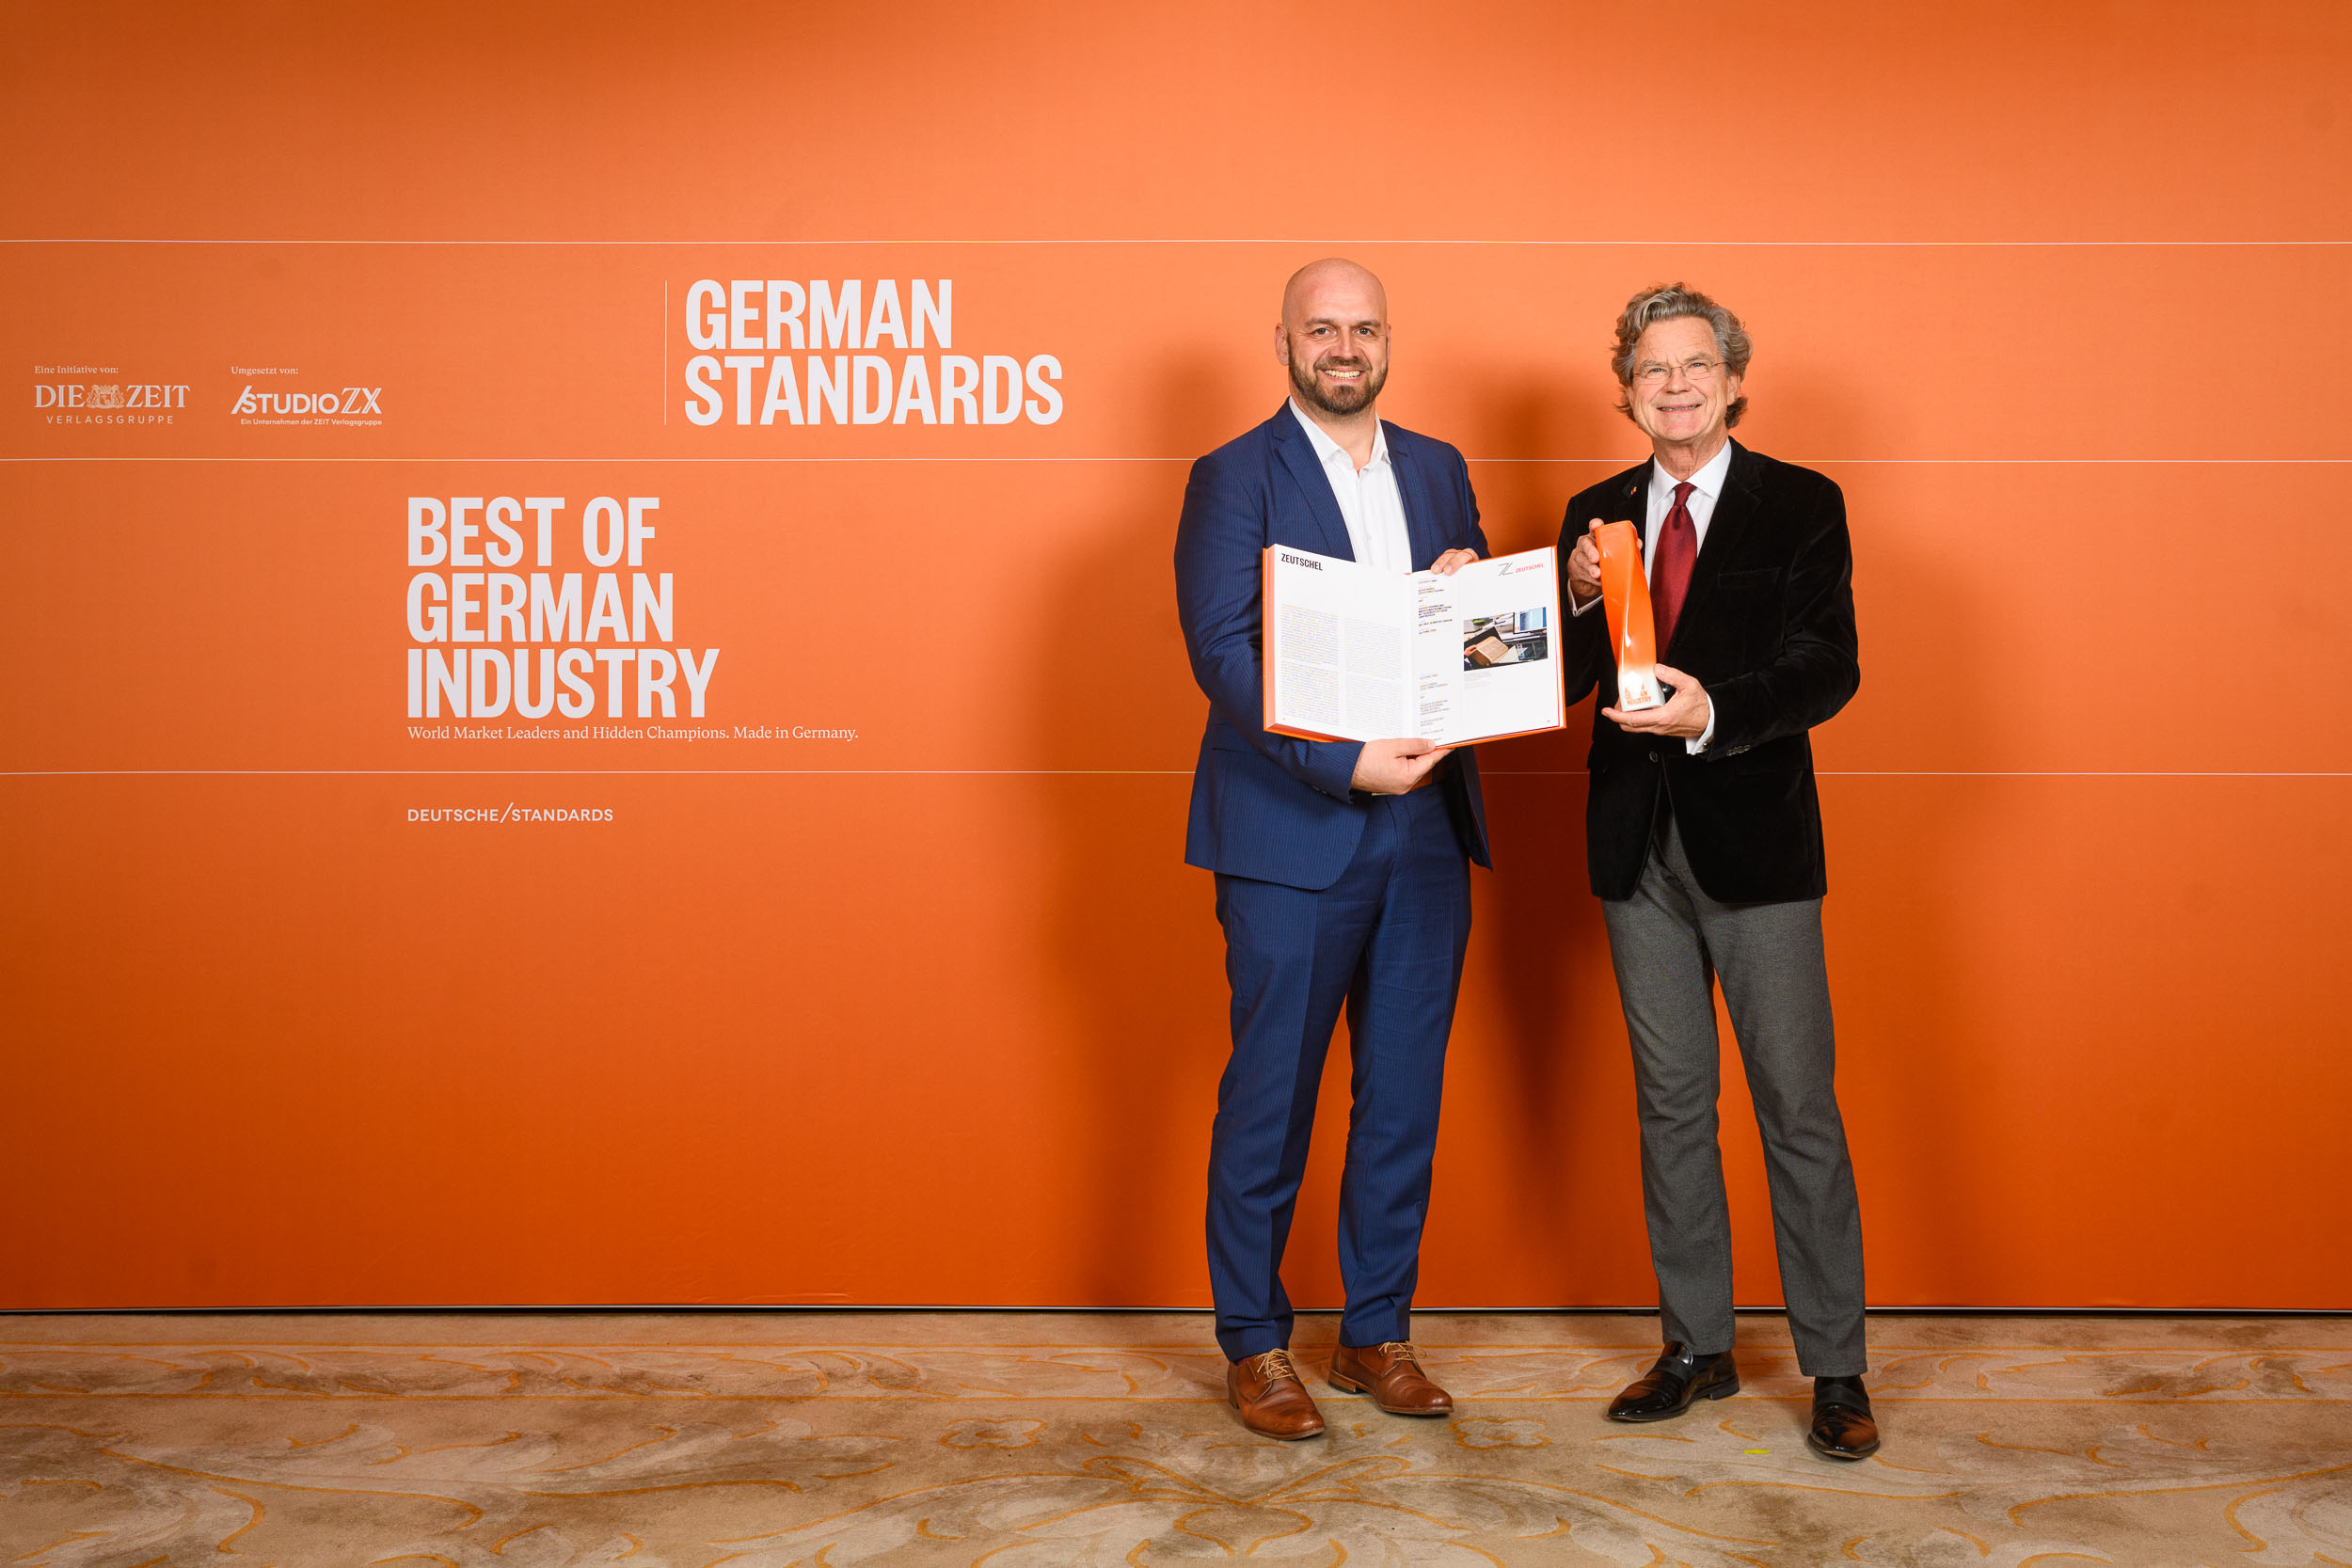 Zeutschel honored as “Best of German Industry”